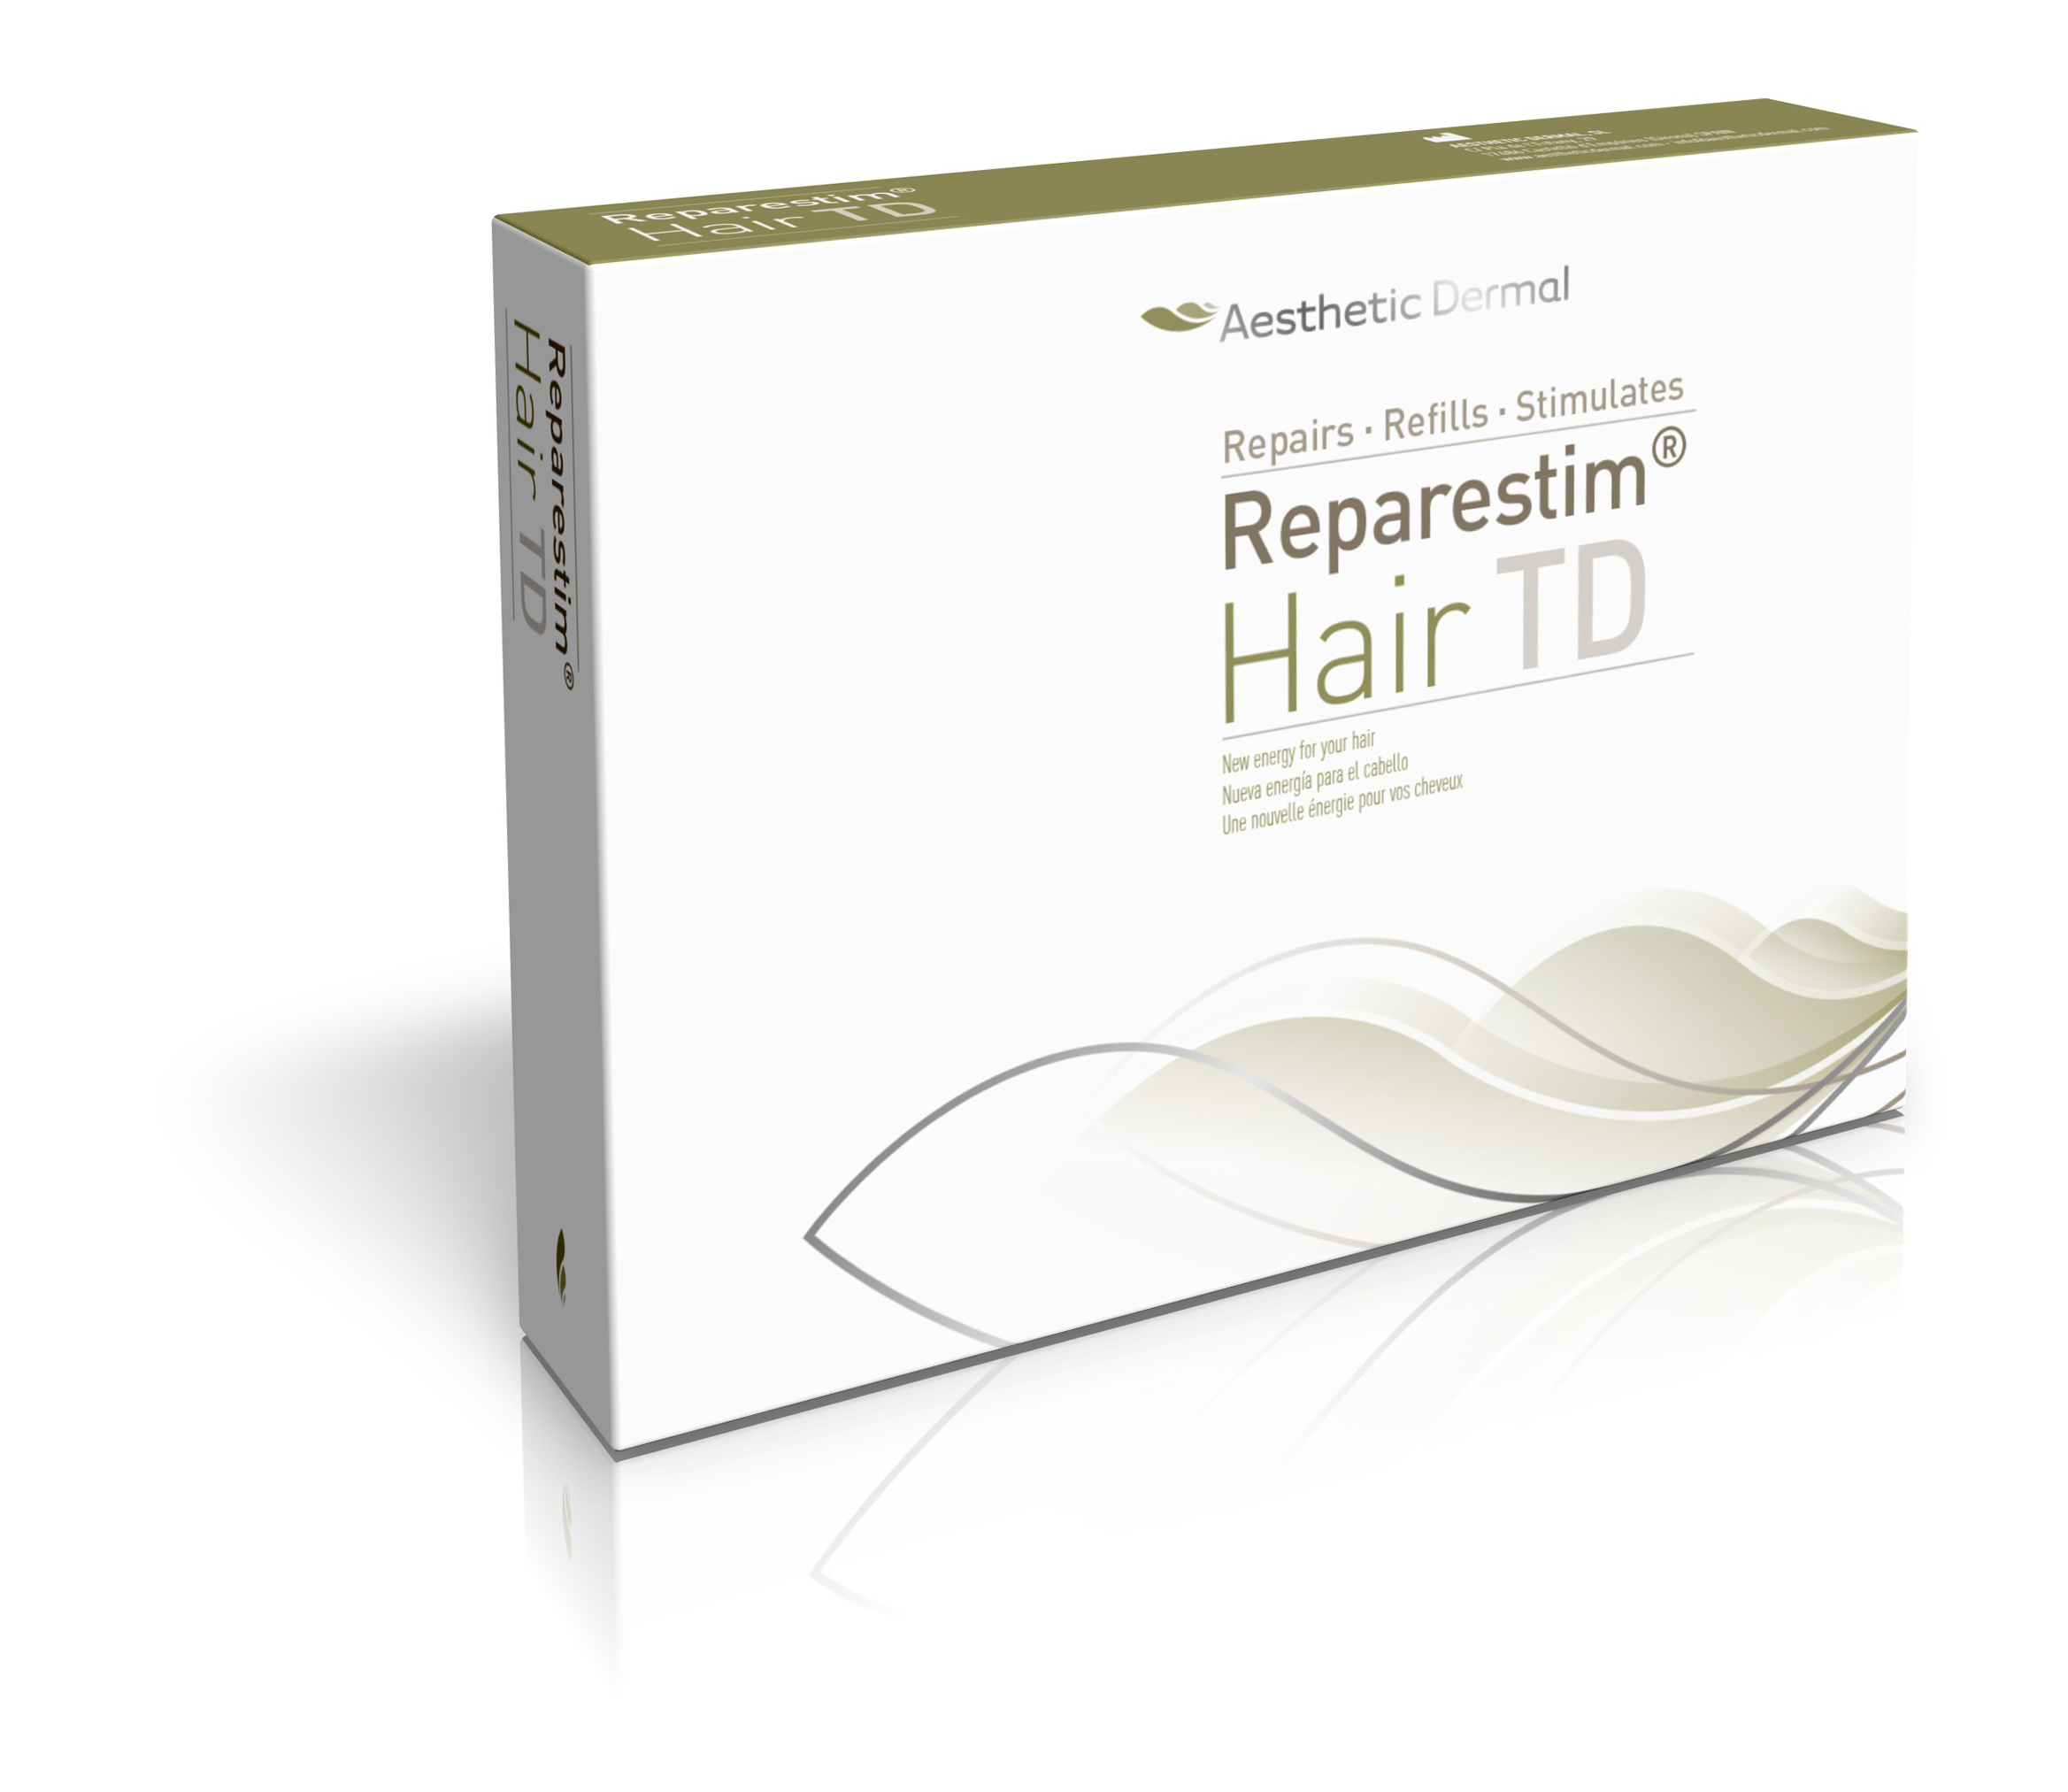 Aesthetic Dermal - Reparestim Hair TD